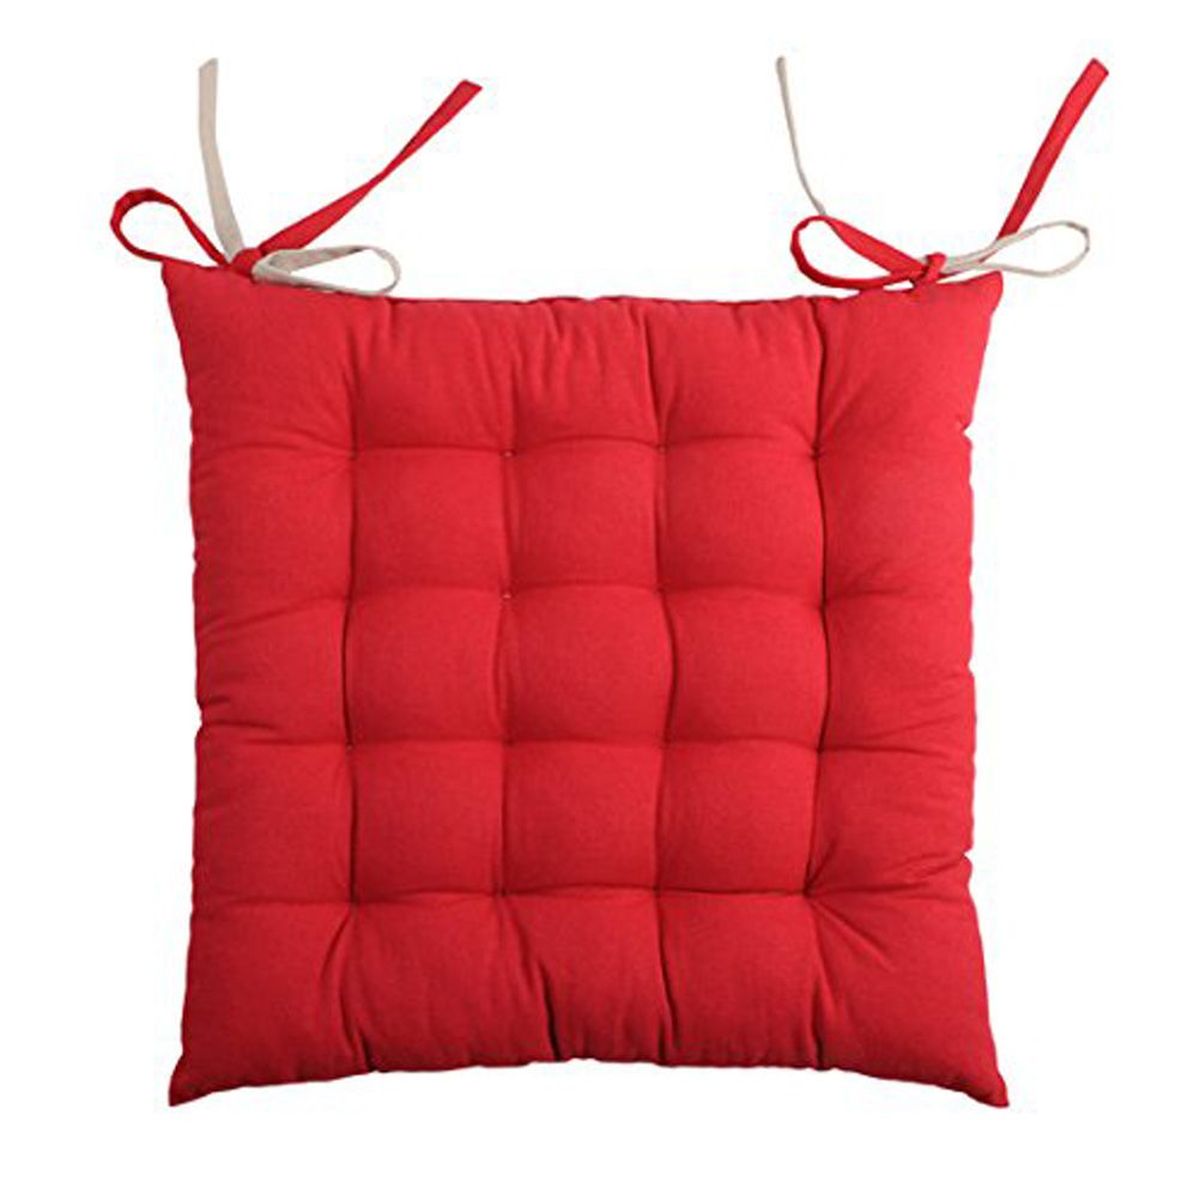 Galette de chaise rversible rouge et lin 40 x 40 cm